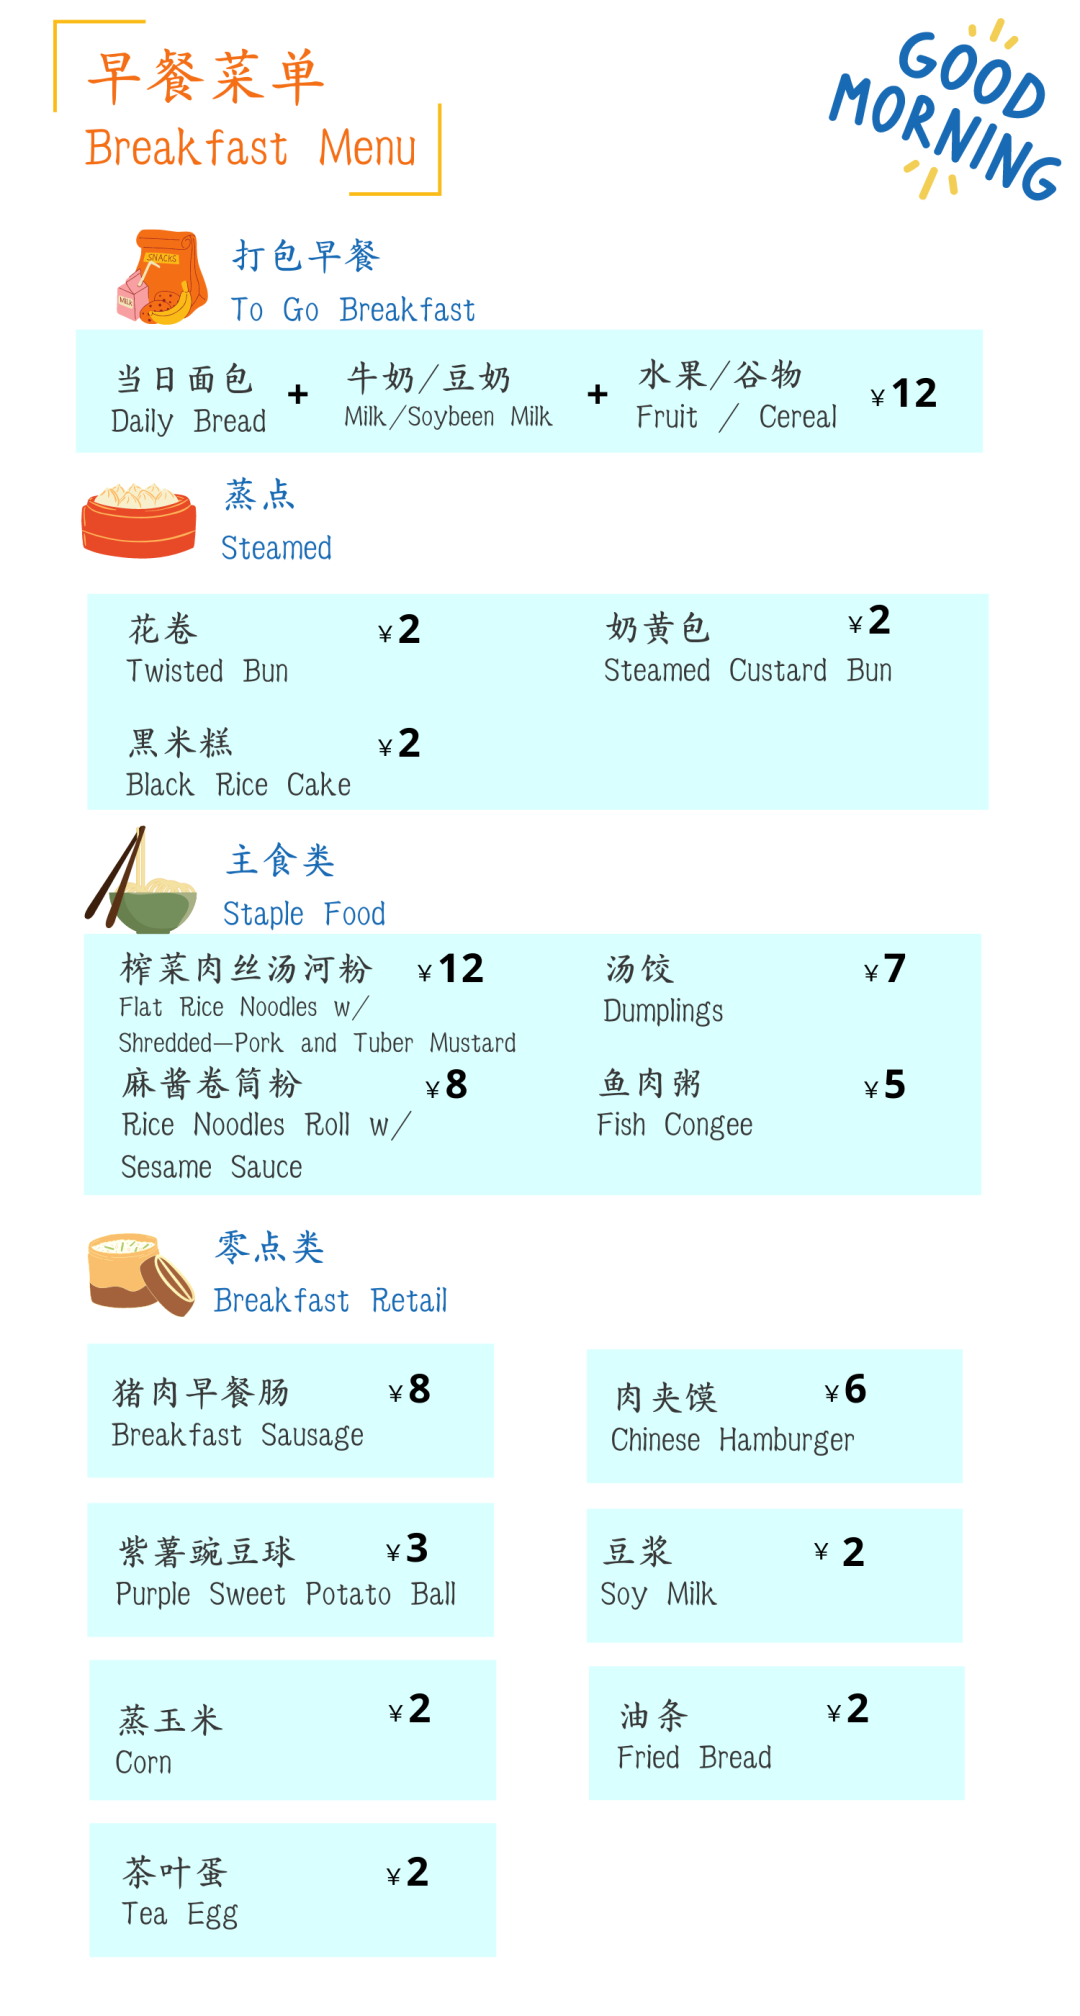 深国交冬天的食堂是什么样子的？美食图片马上端上。。。  深圳国际交流学院 学在国交 深国交 第25张